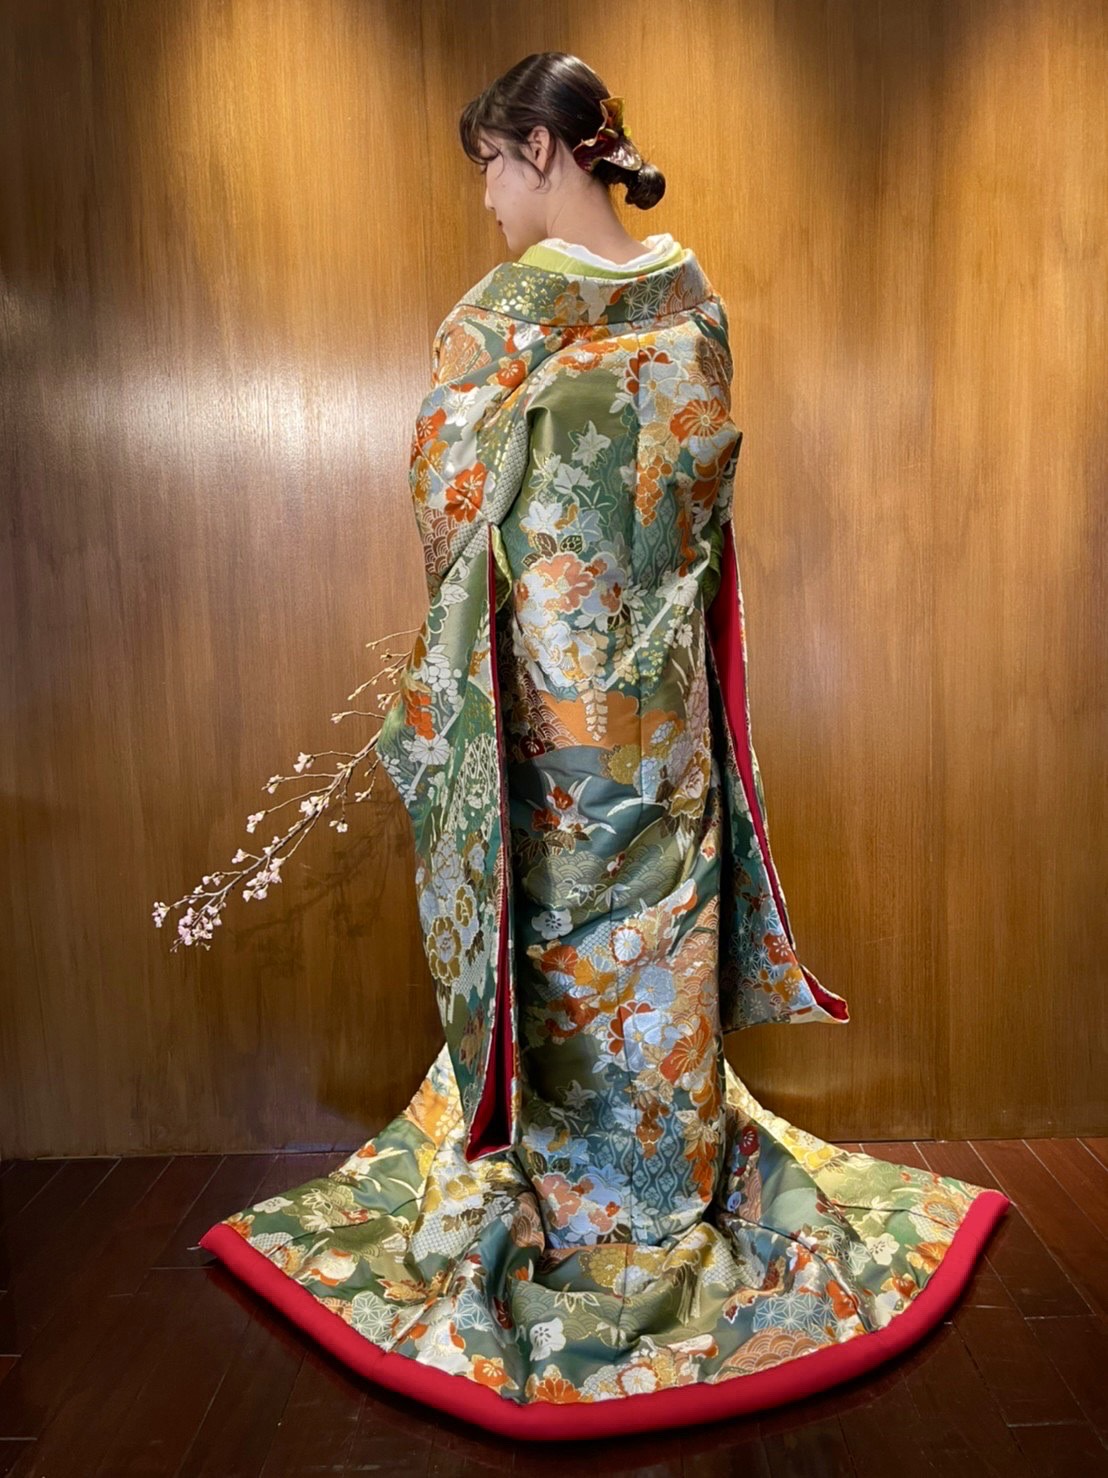 紅葉や桜の刺繍が美しいTHE TREAT DRESSING (ザトリートドレッシング)神戸店にて取り扱いのある緑と朱赤の色打掛のご紹介